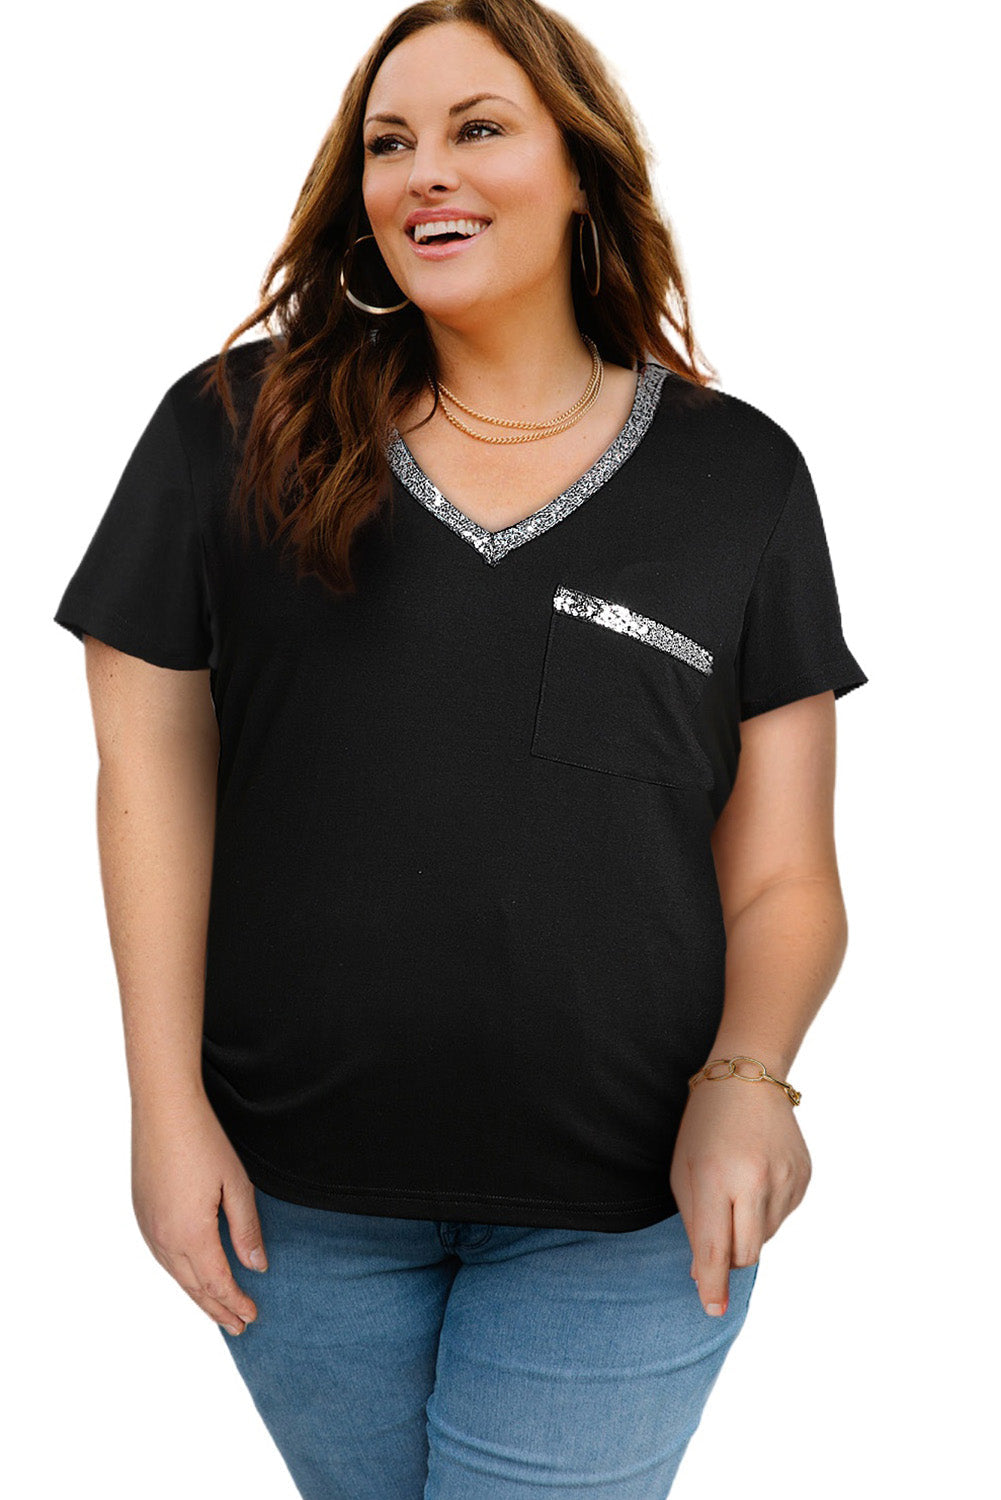 BLACK Contrast Sequin V-Neck Tee Shirt Voluptuous (+) Plus Size - women's shirt at TFC&H Co.